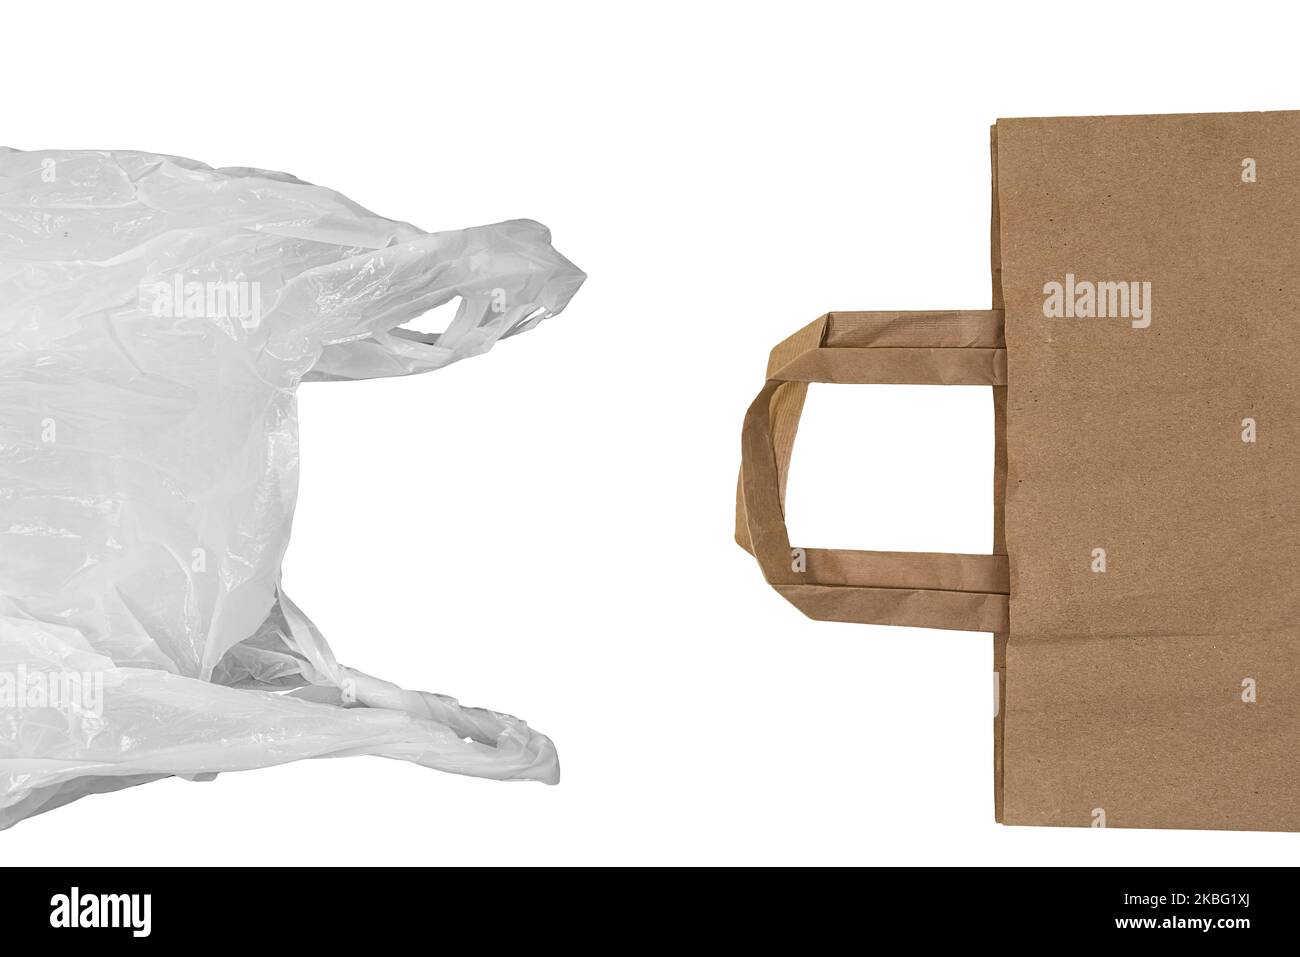 la scelta ecologica: dal sacchetto di plastica al sacchetto di carta riciclata su sfondo trasparente Foto Stock